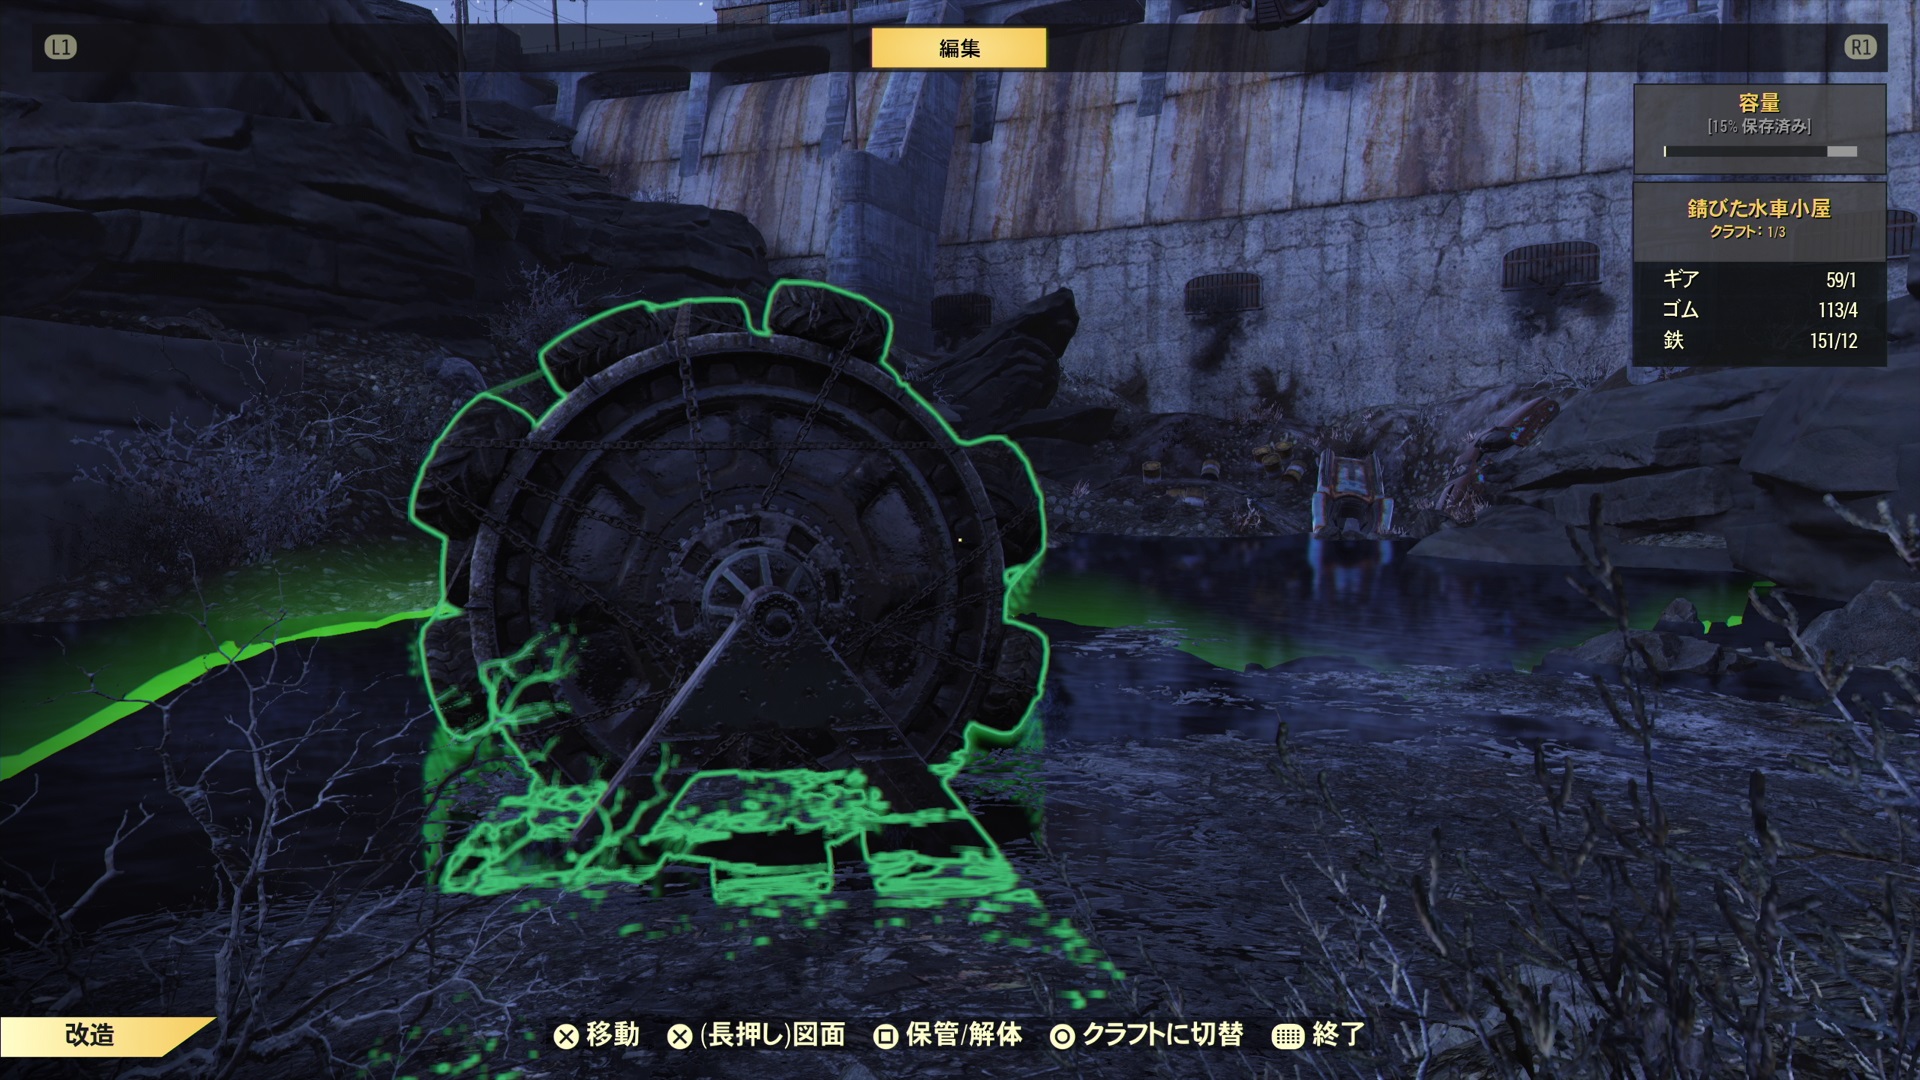 アトミックショップ5月12日 19日 Fallout76 ゲームの玉子様